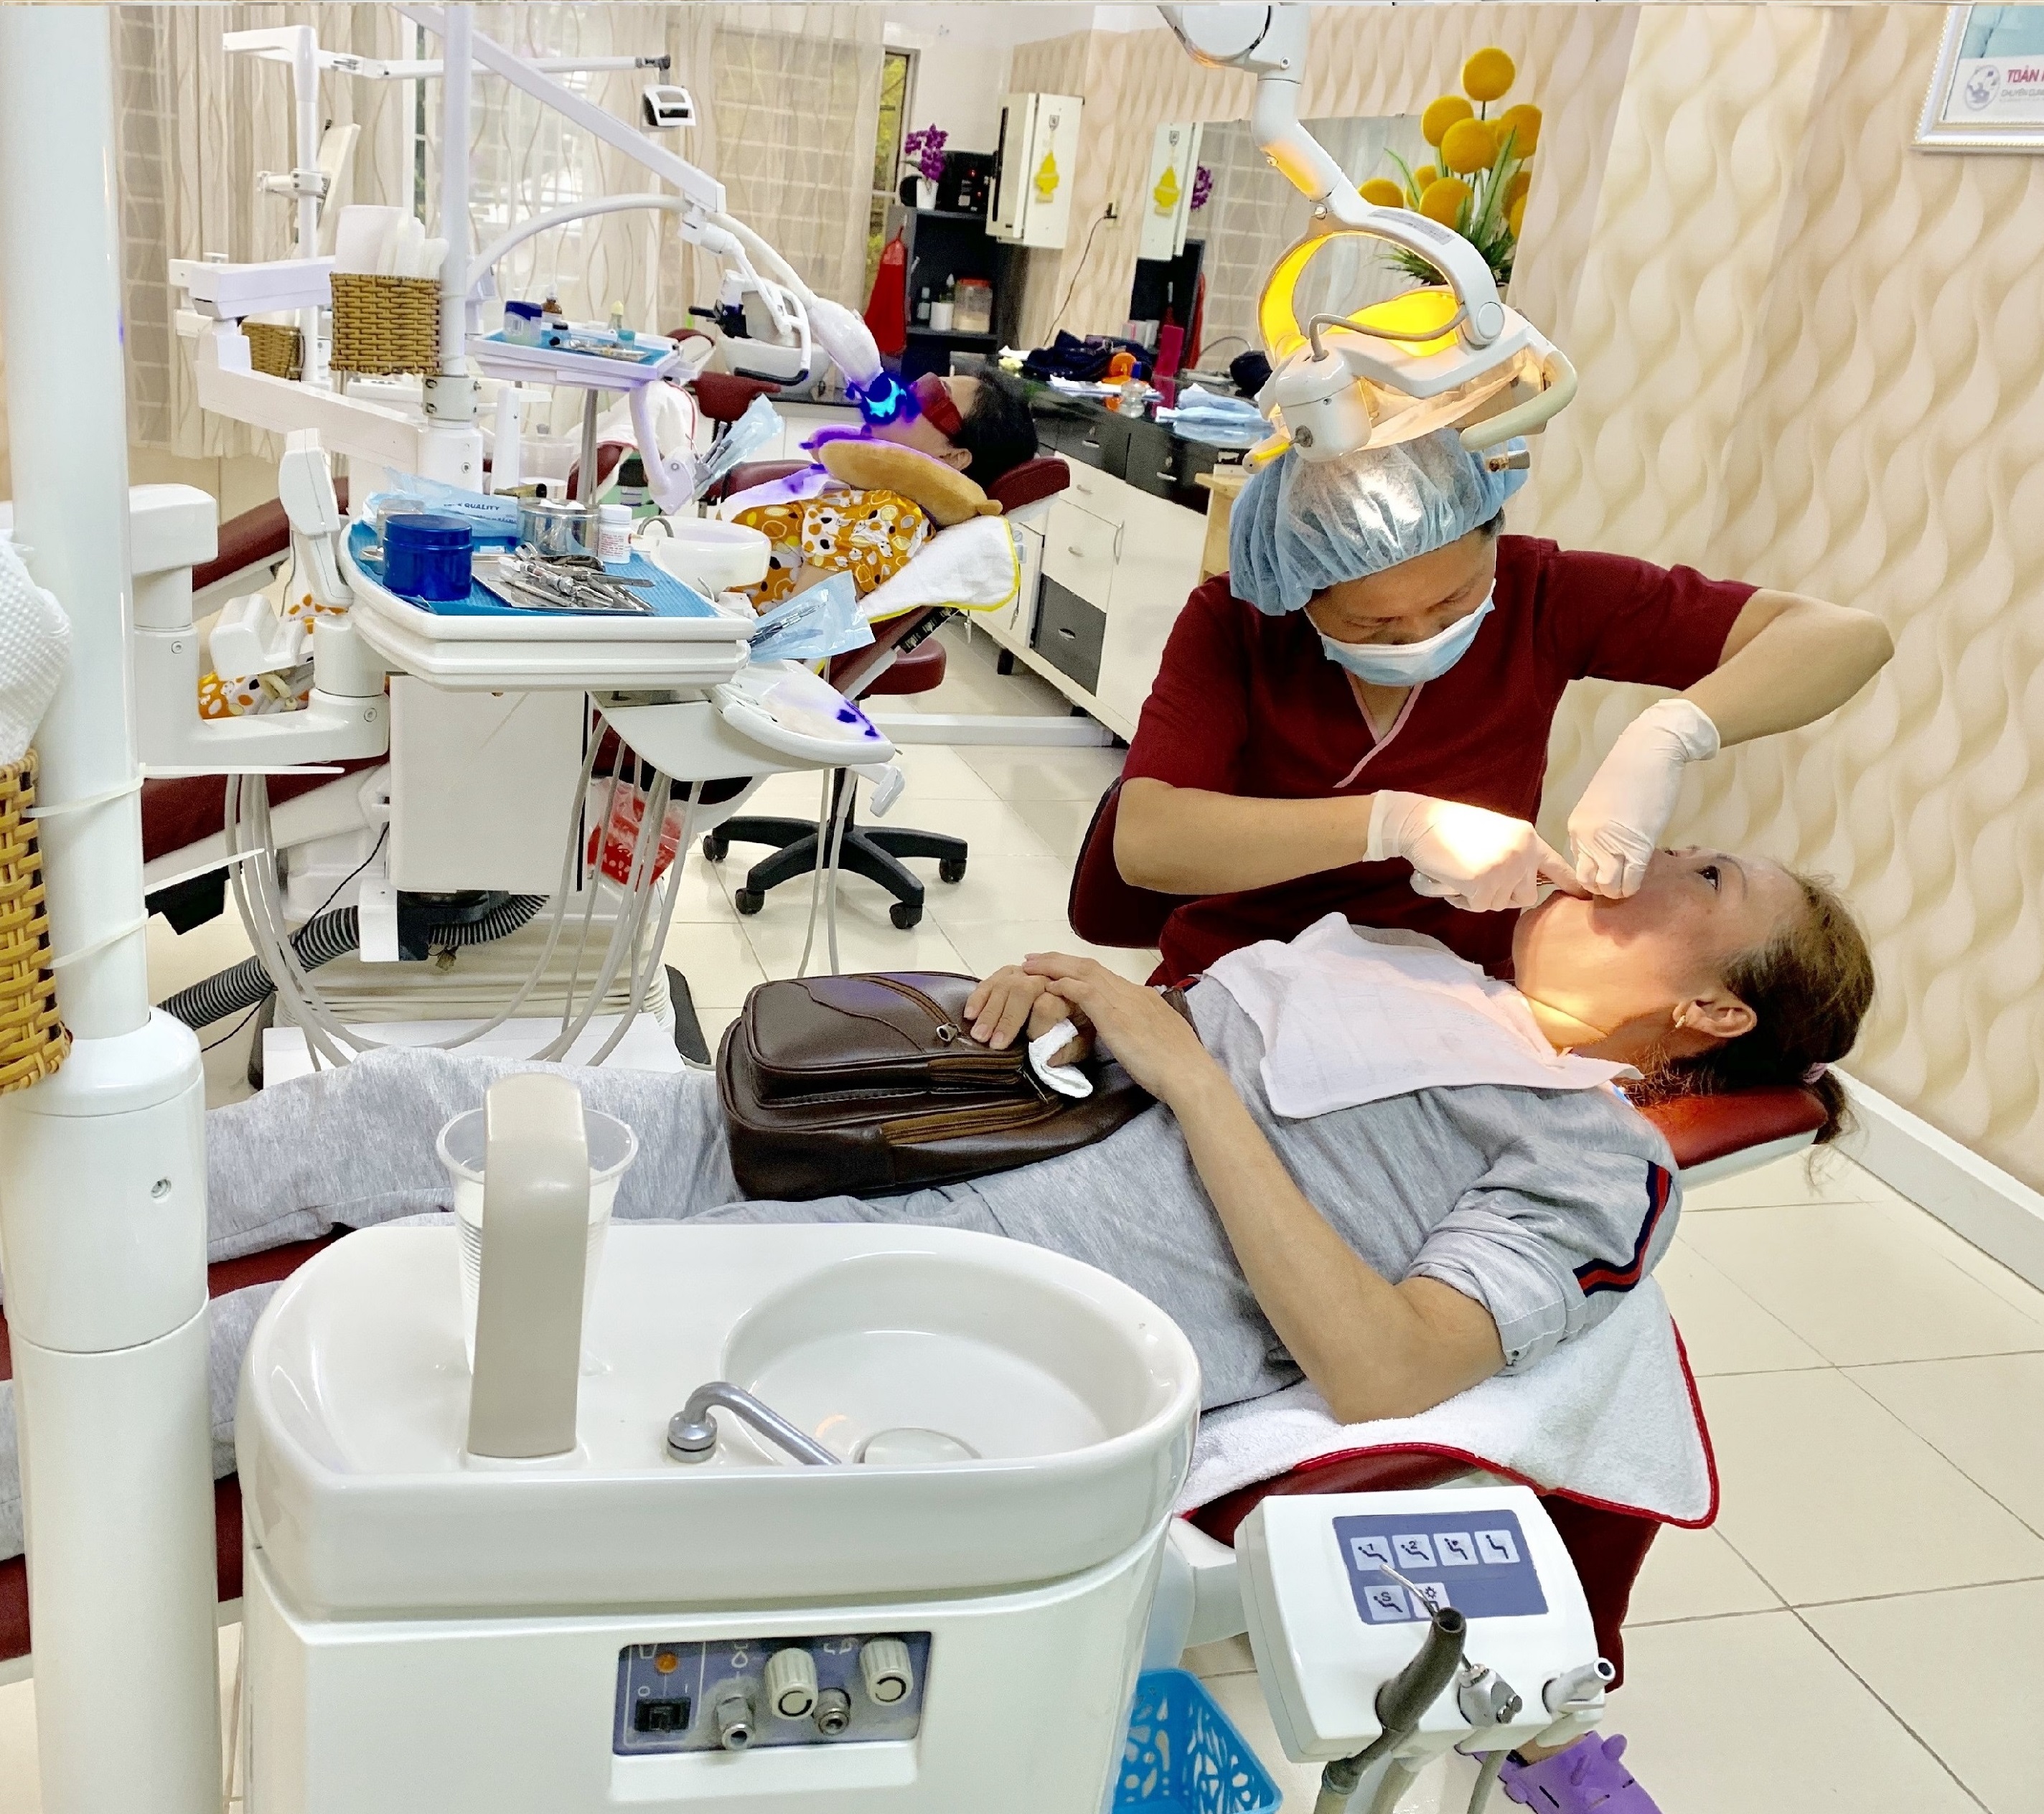 Gói Dịch Vụ 1 Lần Cạo Vôi Răng Và Đánh Bóng Tại Nha Khoa Thẩm Mỹ Hồng Ân